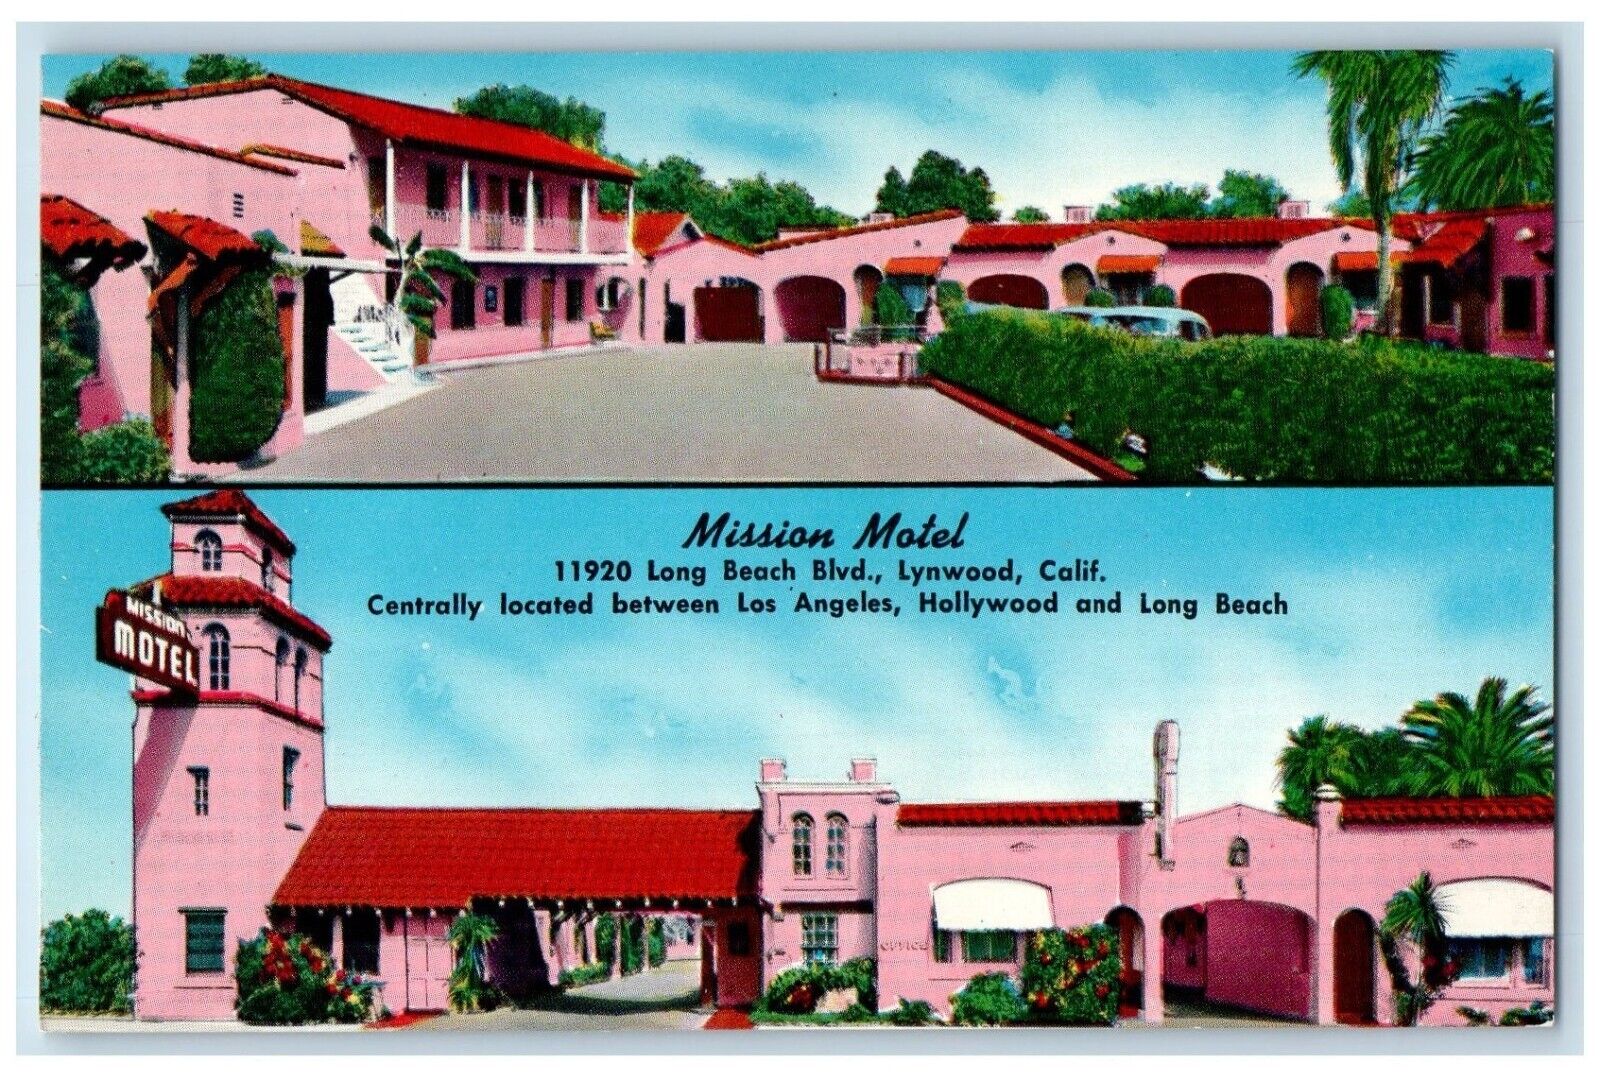 c1950 Mission Motel Long Beach Los Angeles Hollywood Lynwood California Postcard